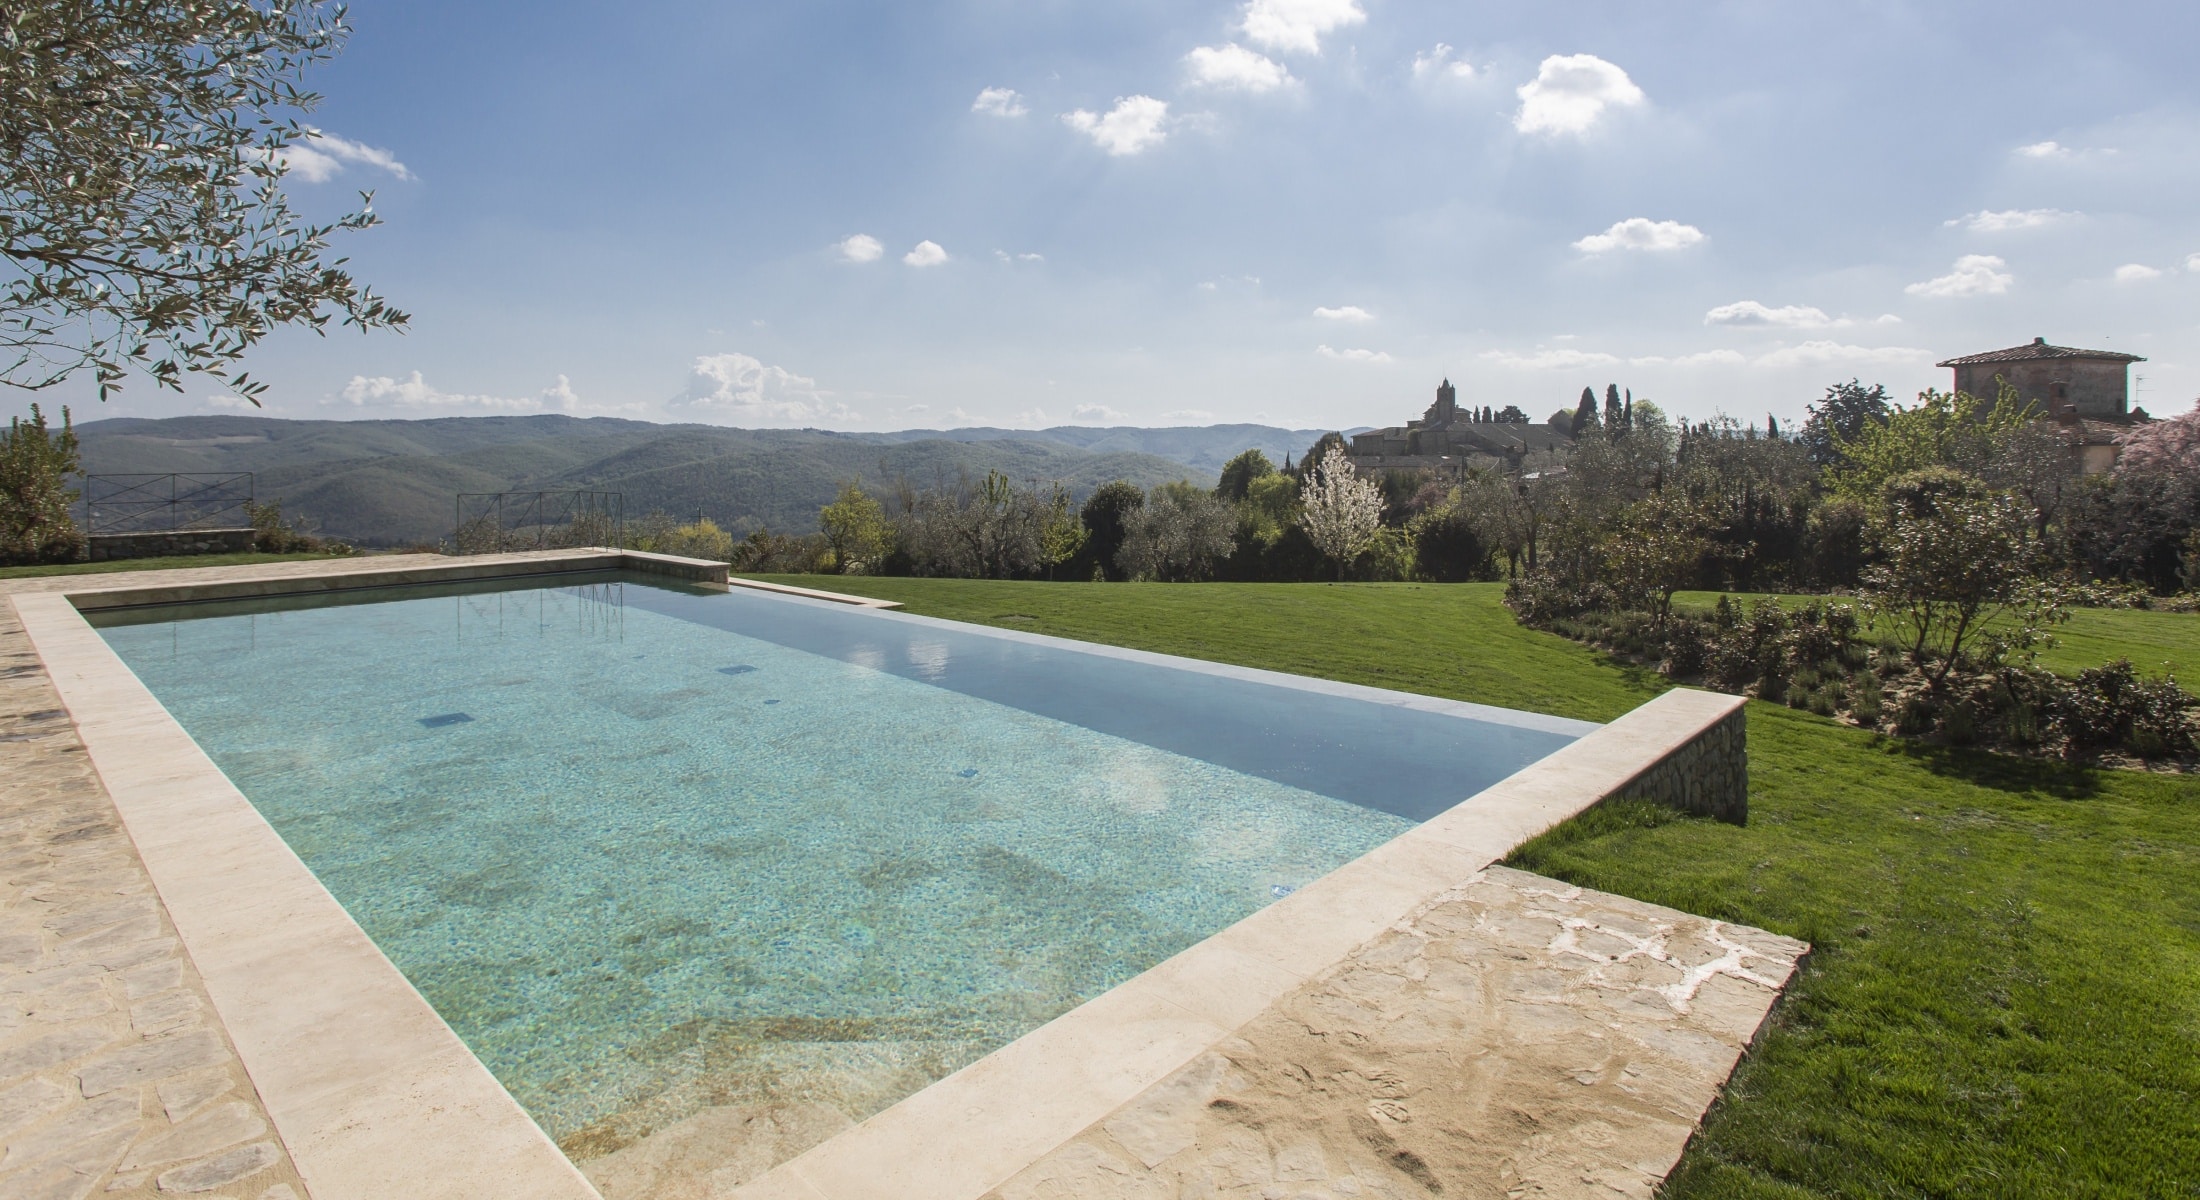 Villa Le Barone pool in Italy